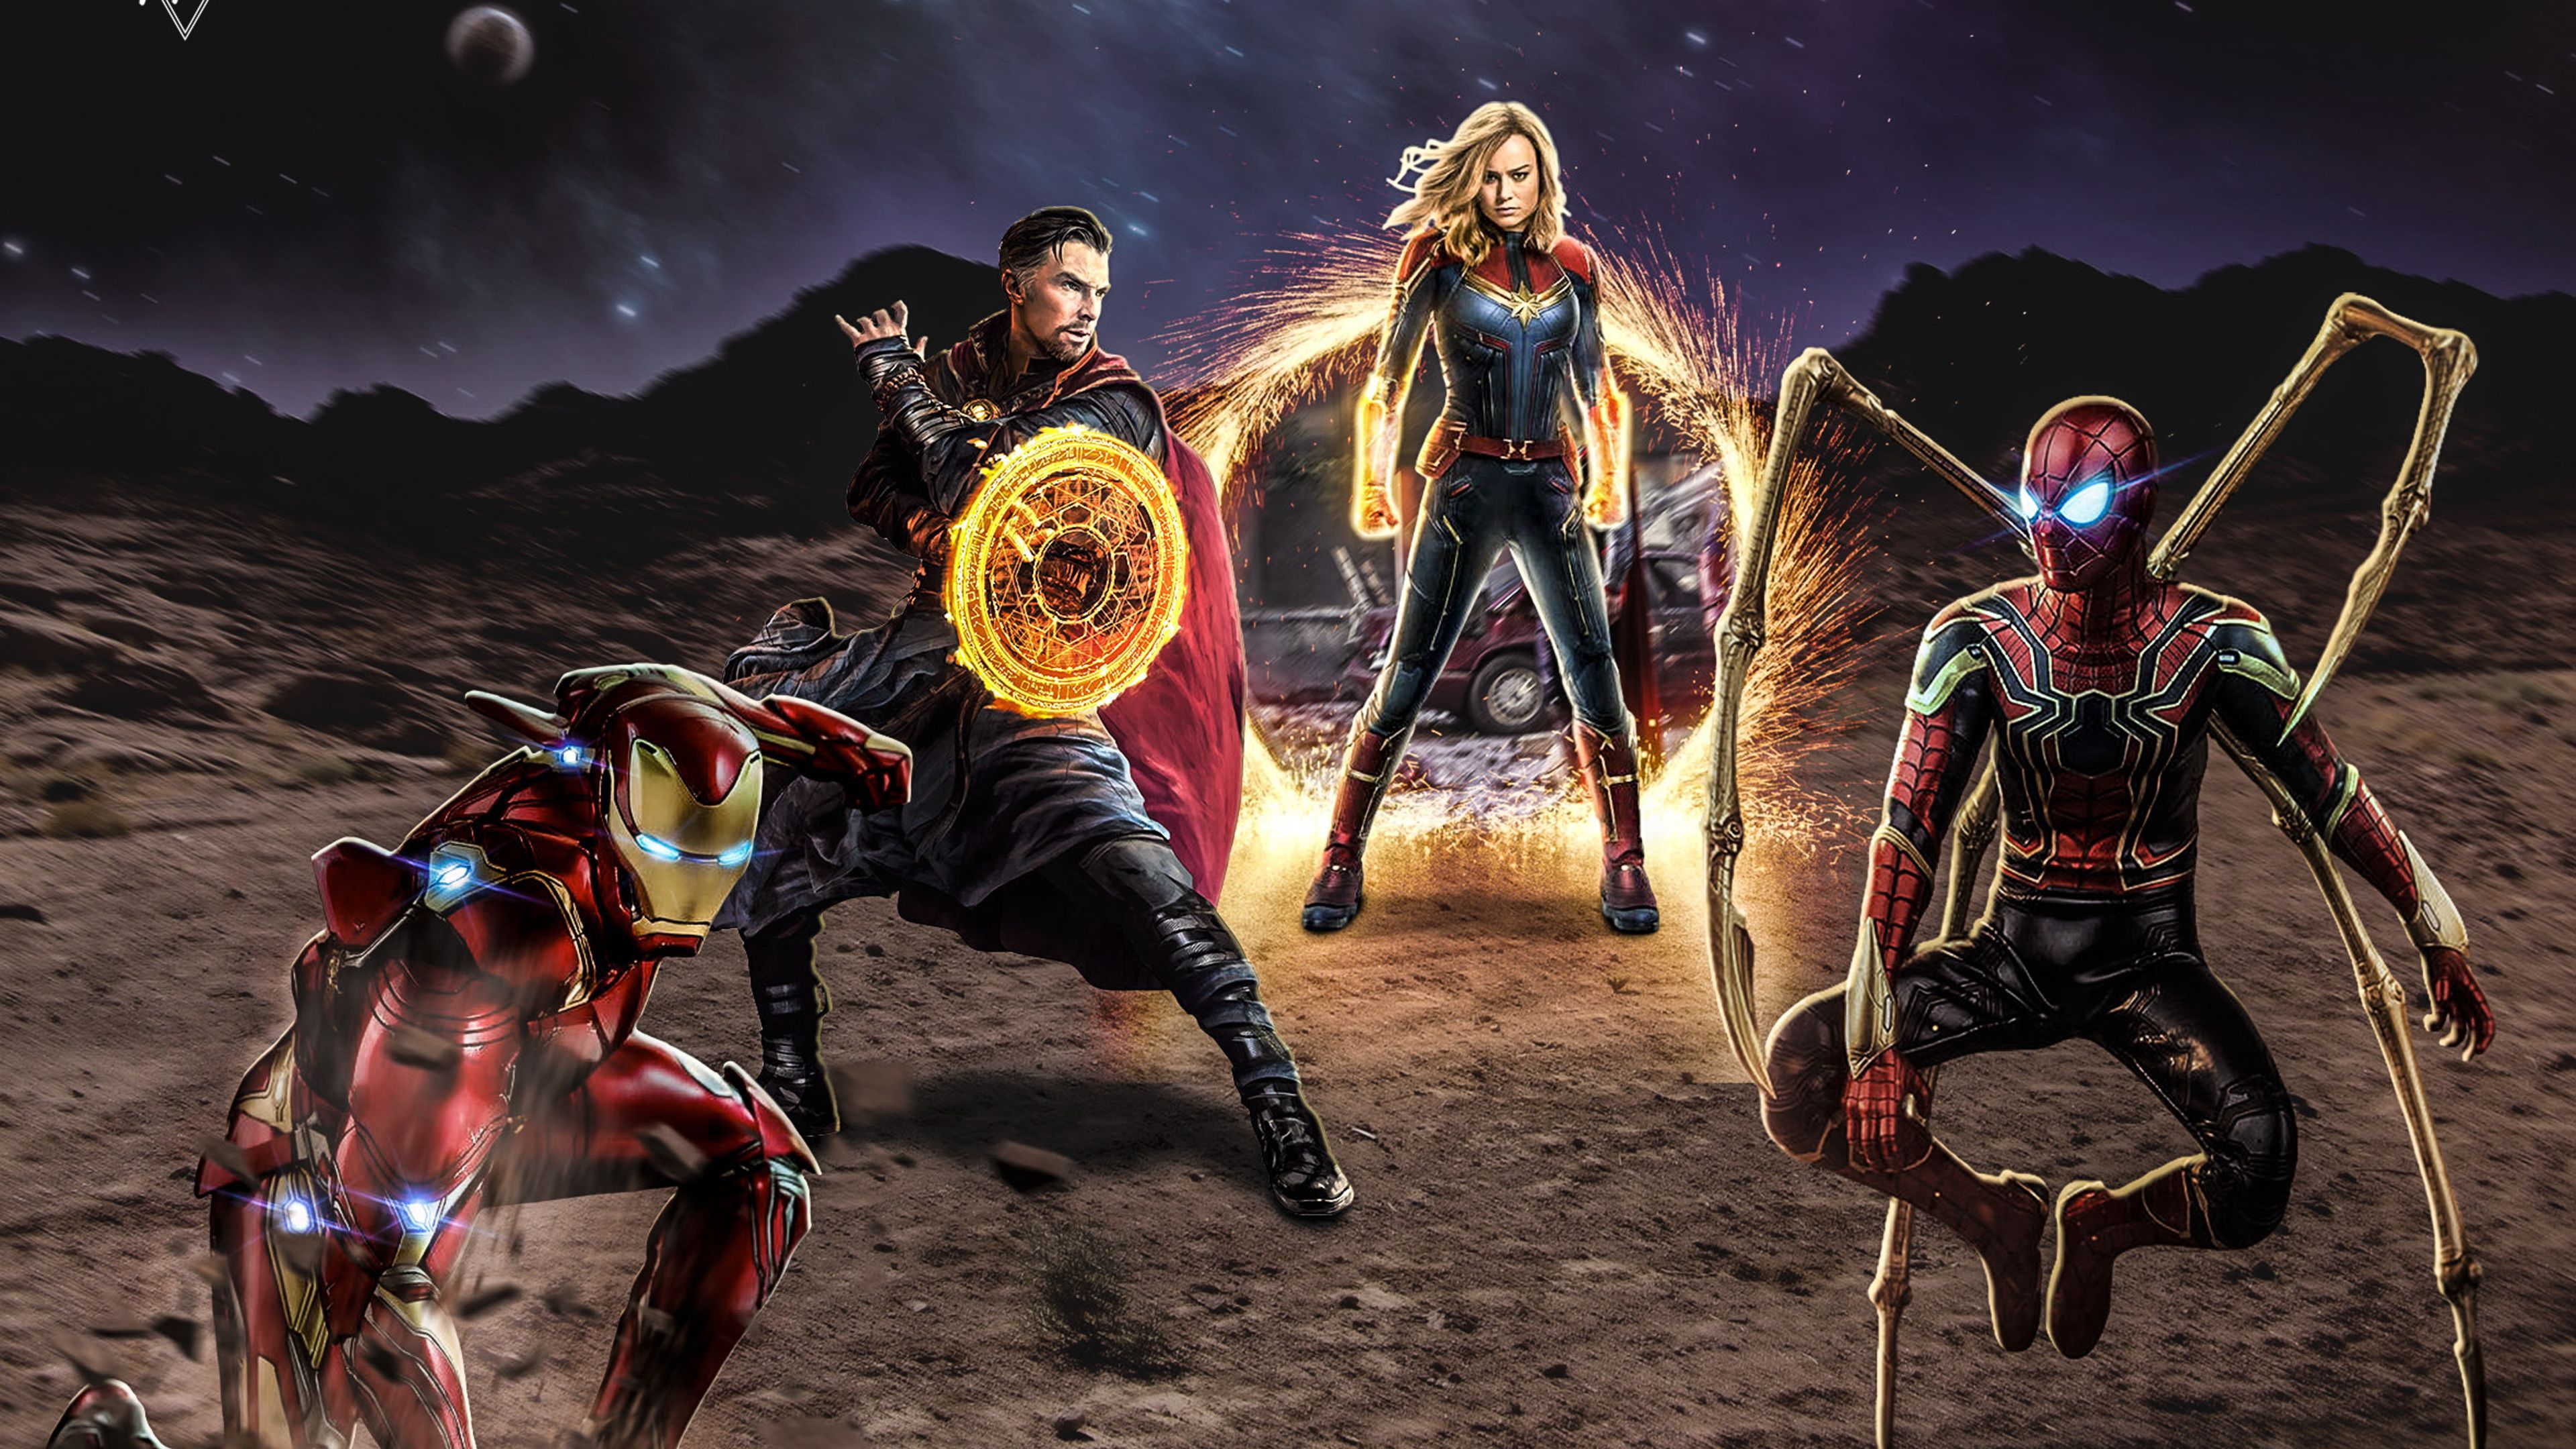 Avengers 4 End Game Art 2019 4k wallpaper avengers wallpaper HD 4k